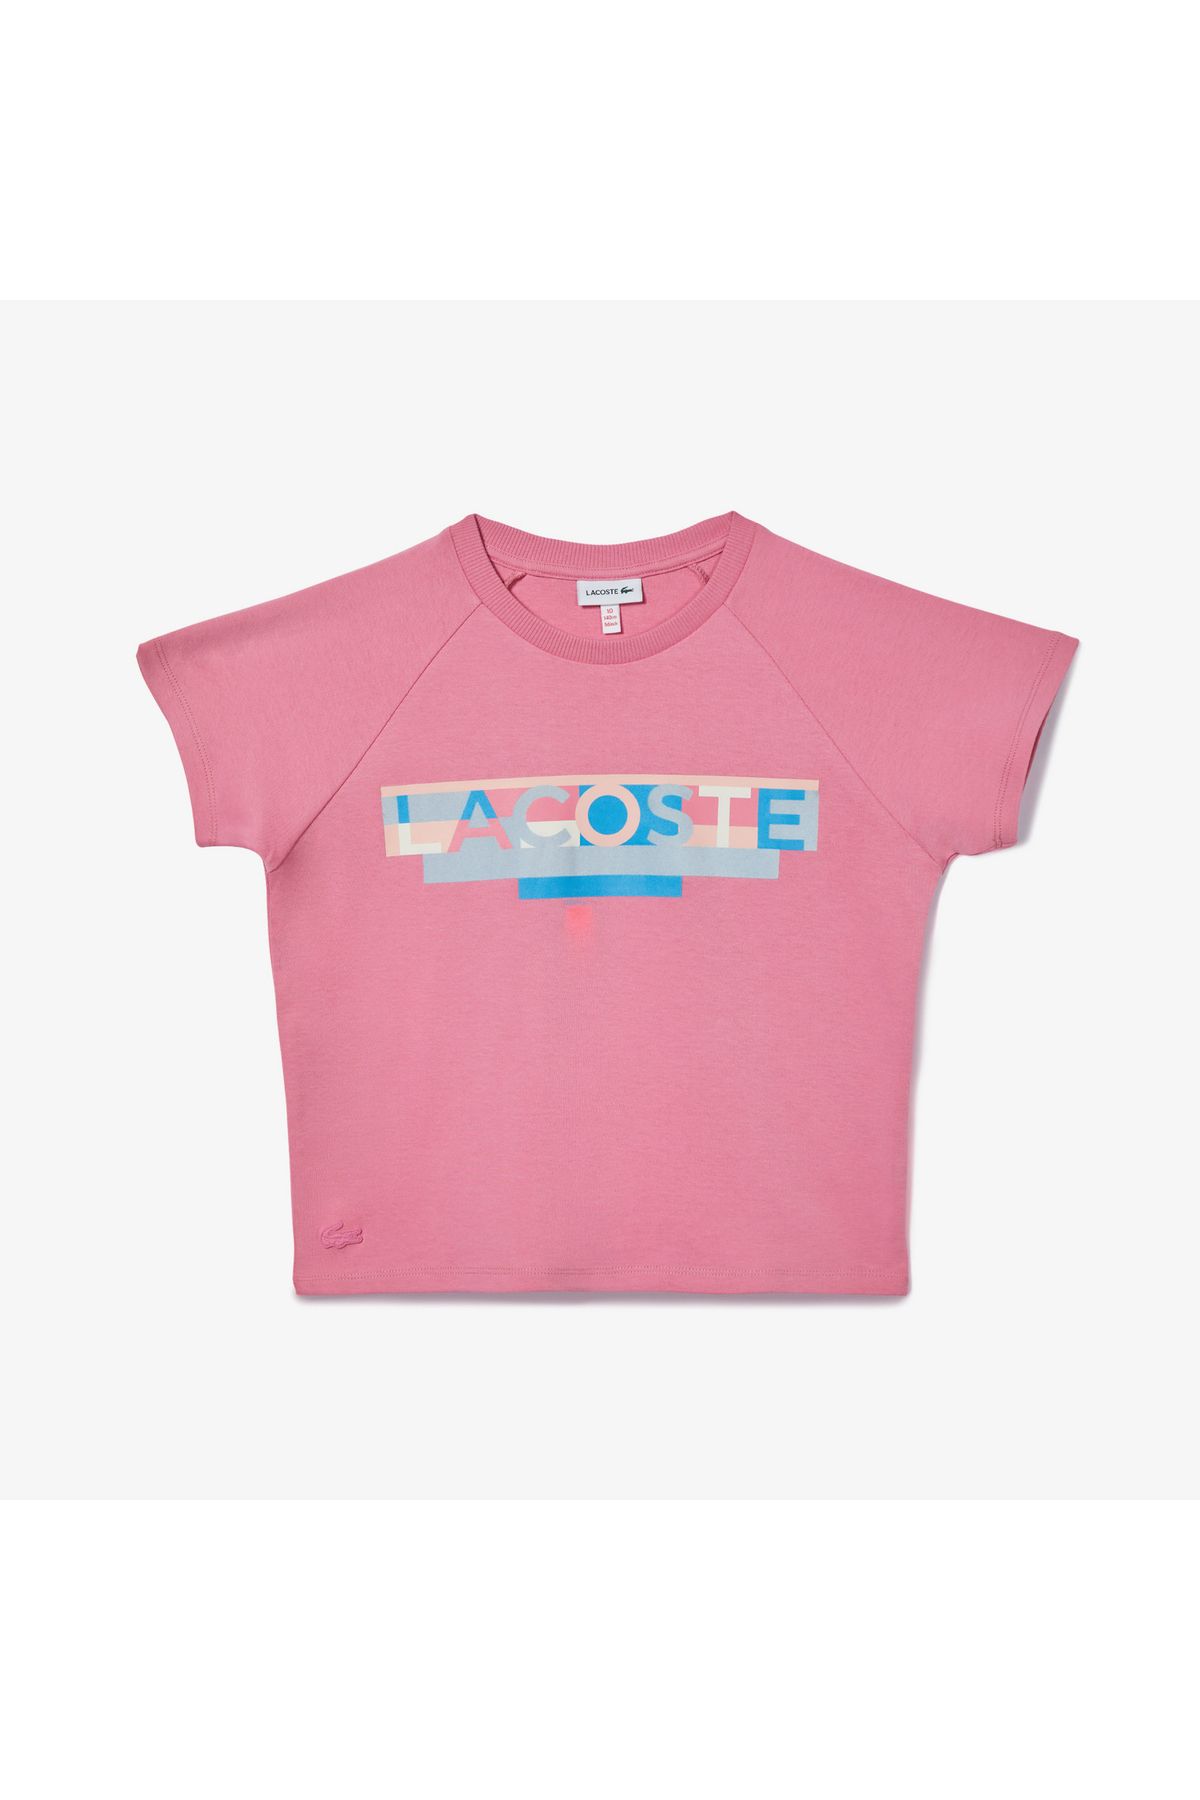 Lacoste Çocuk Baskılı Pembe T-shirt